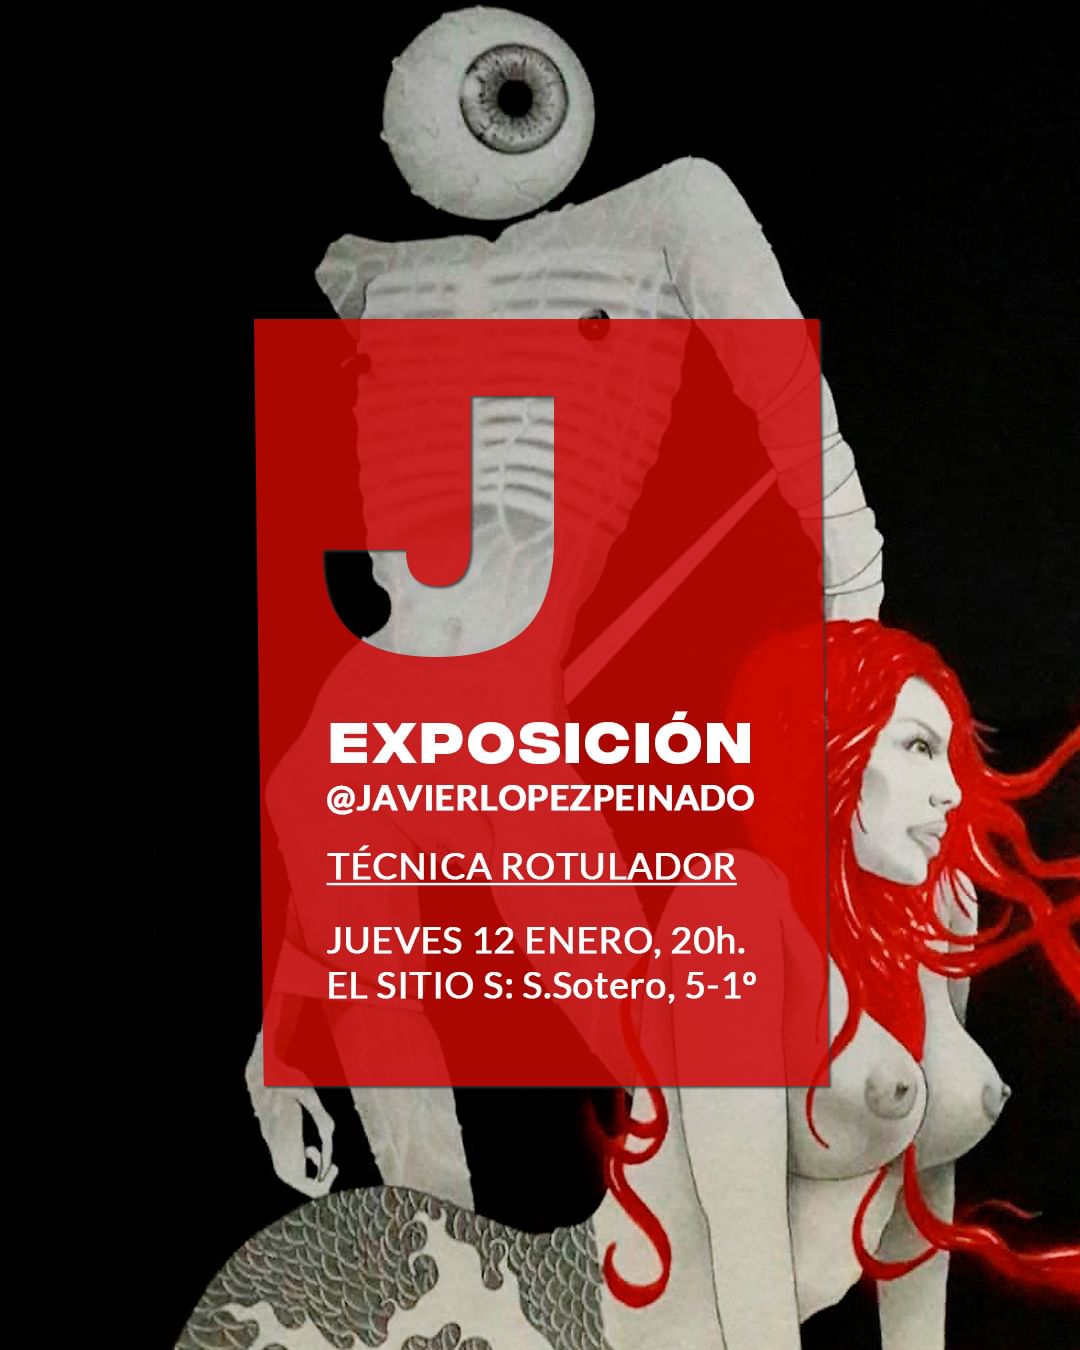 Exposición de Javier López Peinado